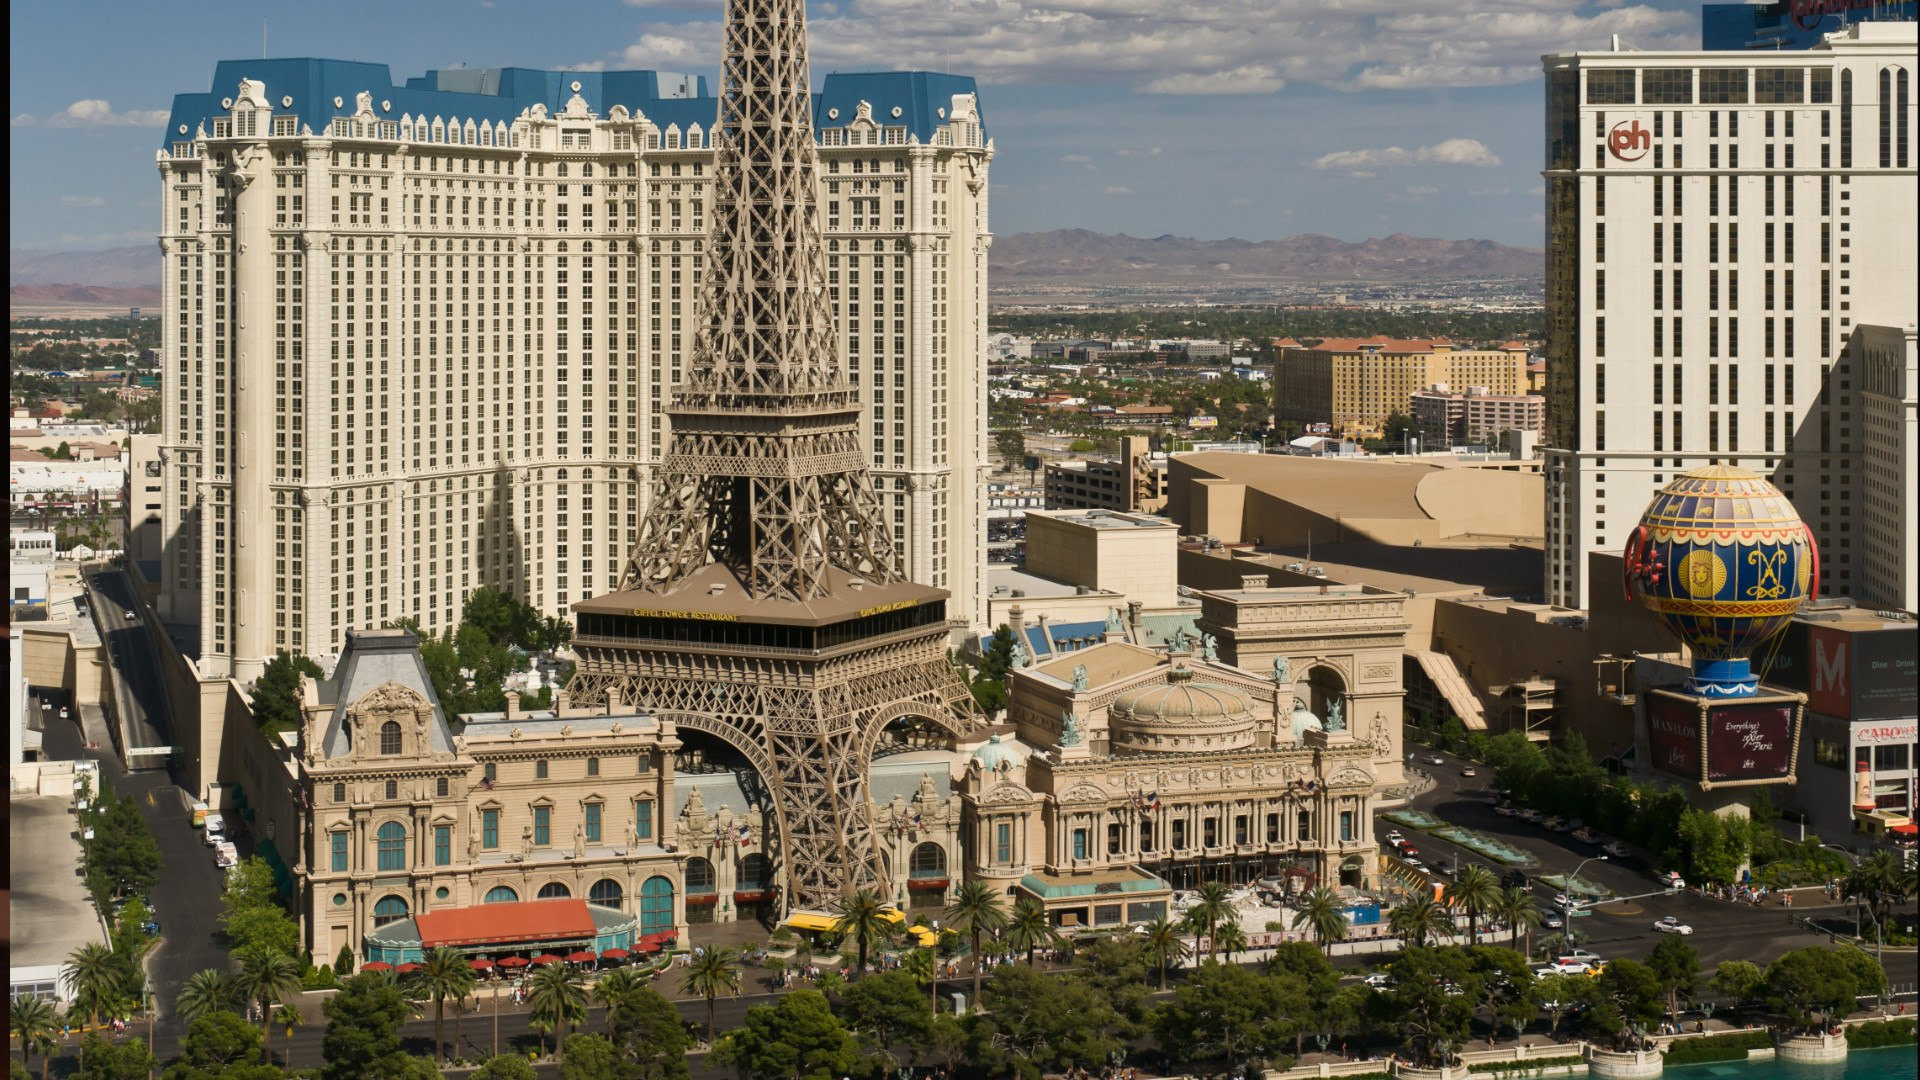 Las Vegas Casino & Games  Paris Las Vegas Hotel & Casino